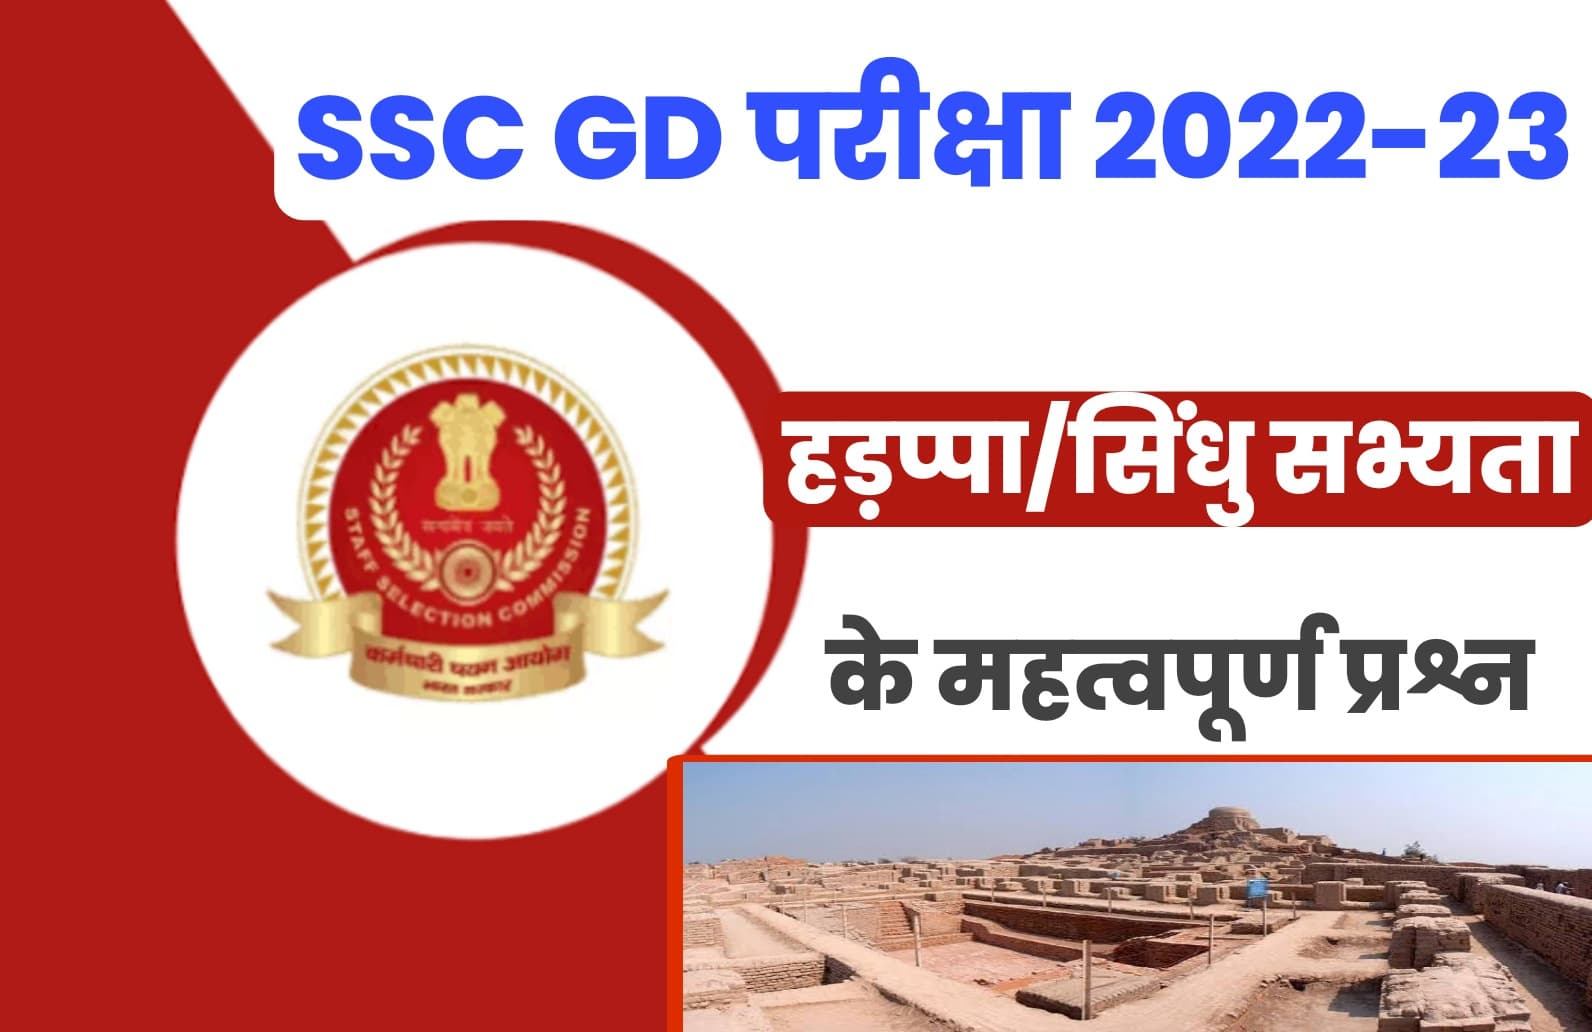 SSC GD Exam 2022-23 Top Mcq : एसएससी जीडी परीक्षा में हड़प्पा /सिंधु सभ्यता के मुख्य प्रश्नों का संग्रह एक बार अवश्य पढ़ें